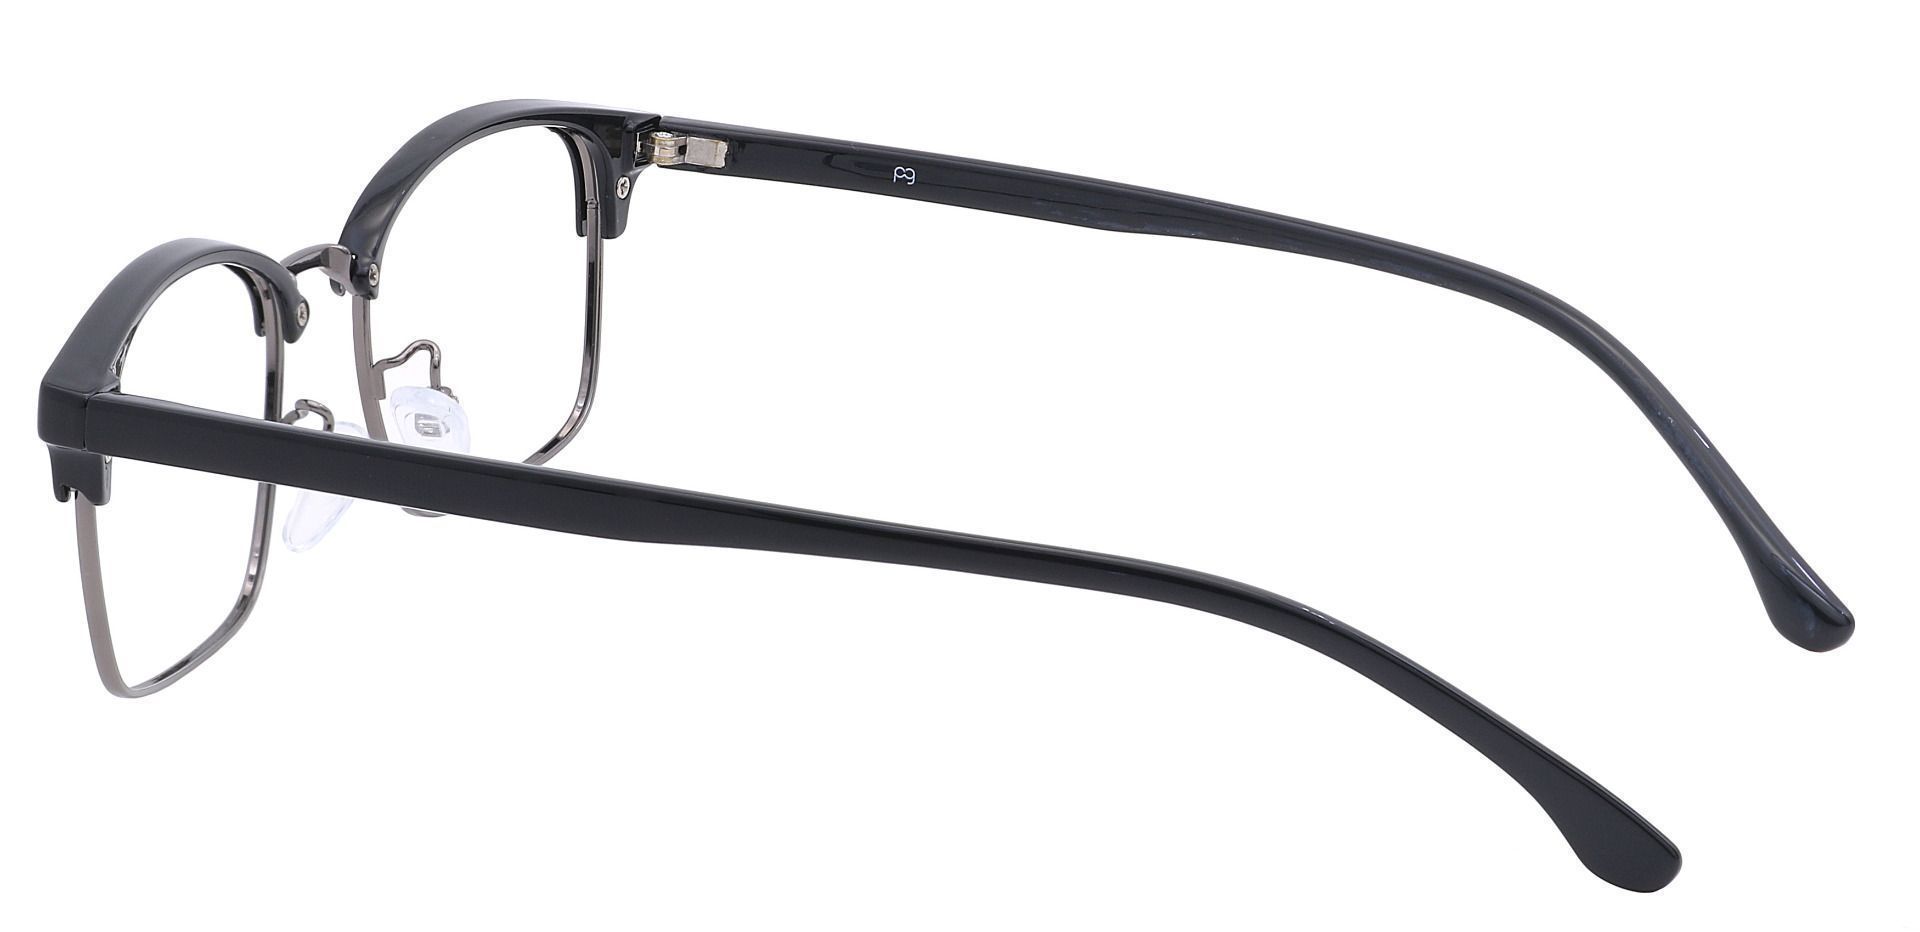 Clover Browline Prescription Glasses - Black